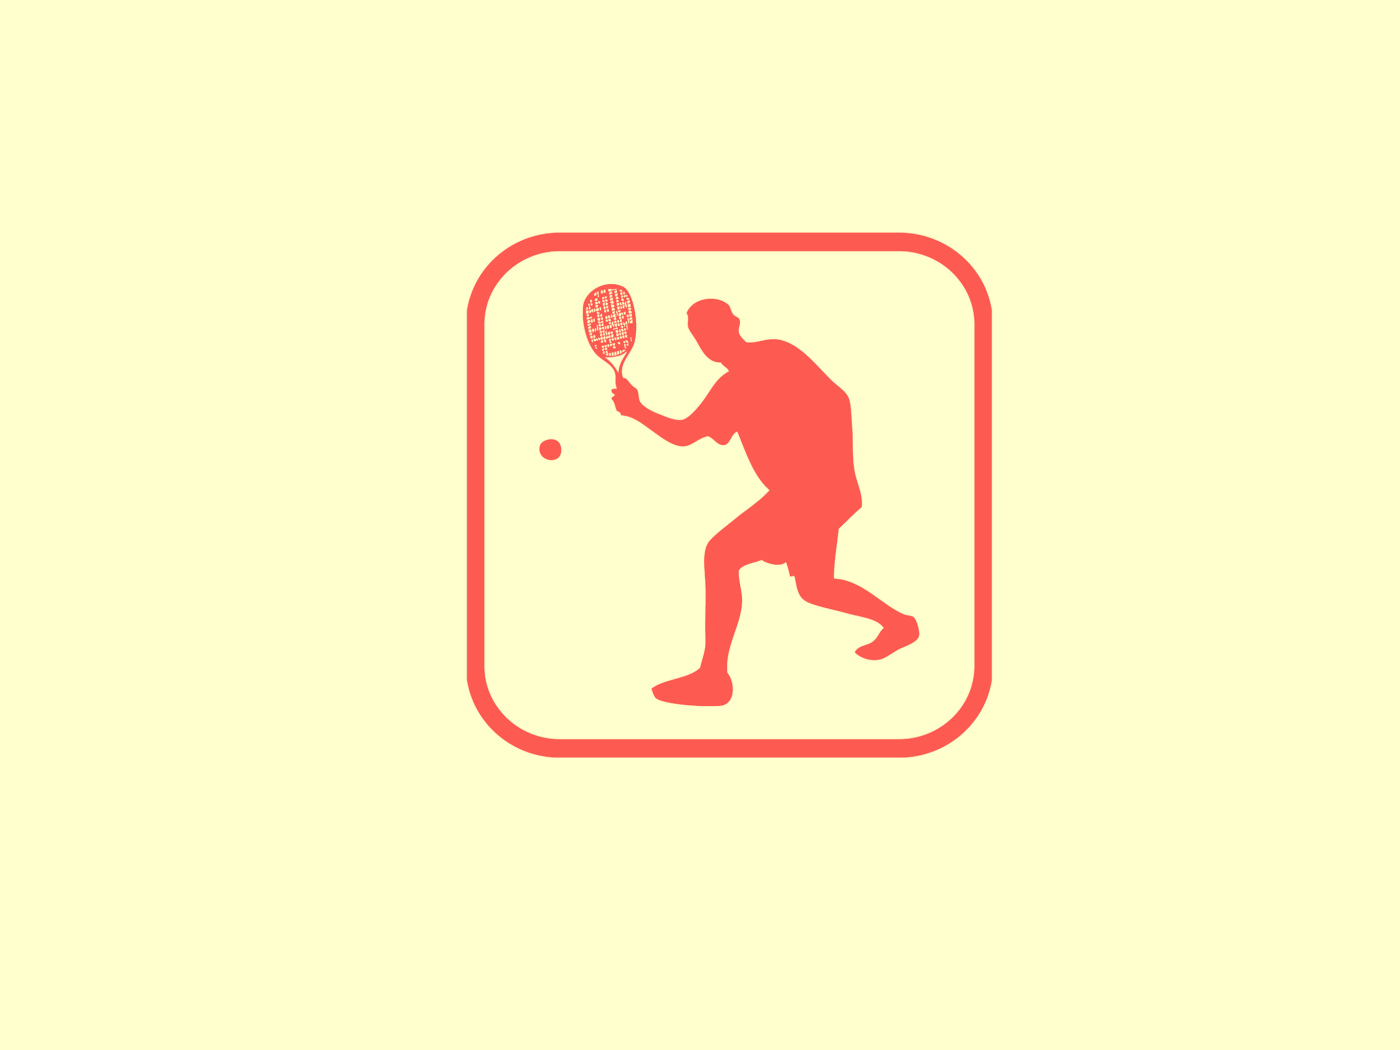 Обои Squash Game Logo 1400x1050